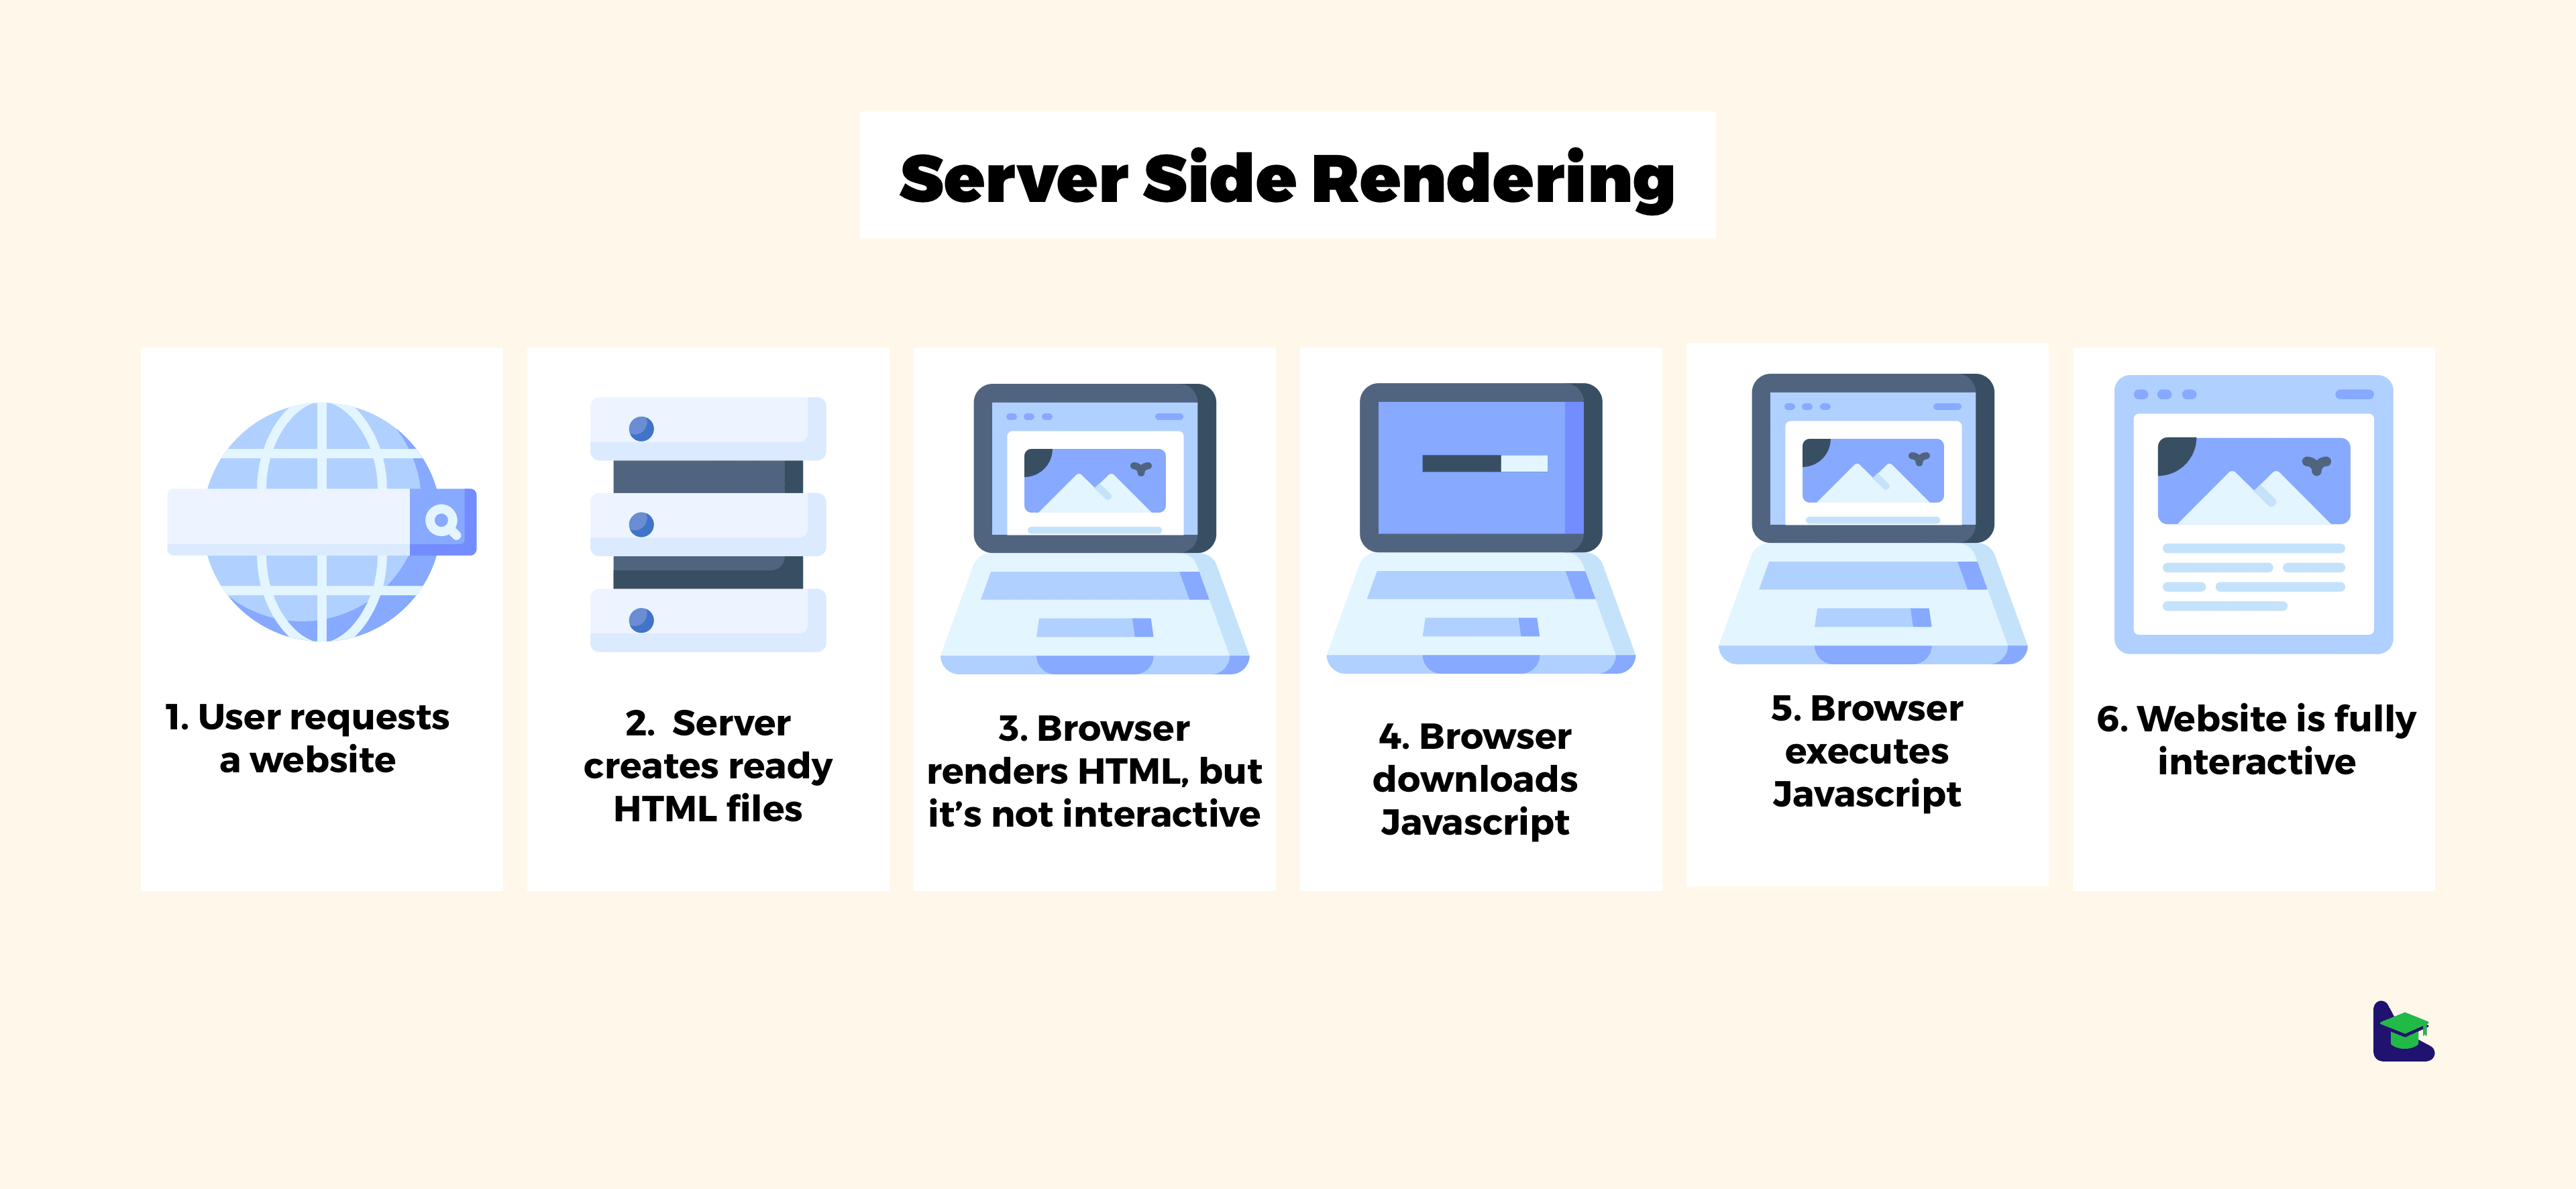 Emulatie Behoefte aan Alcatraz Island Server-side rendering vs client-side rendering | Droptica